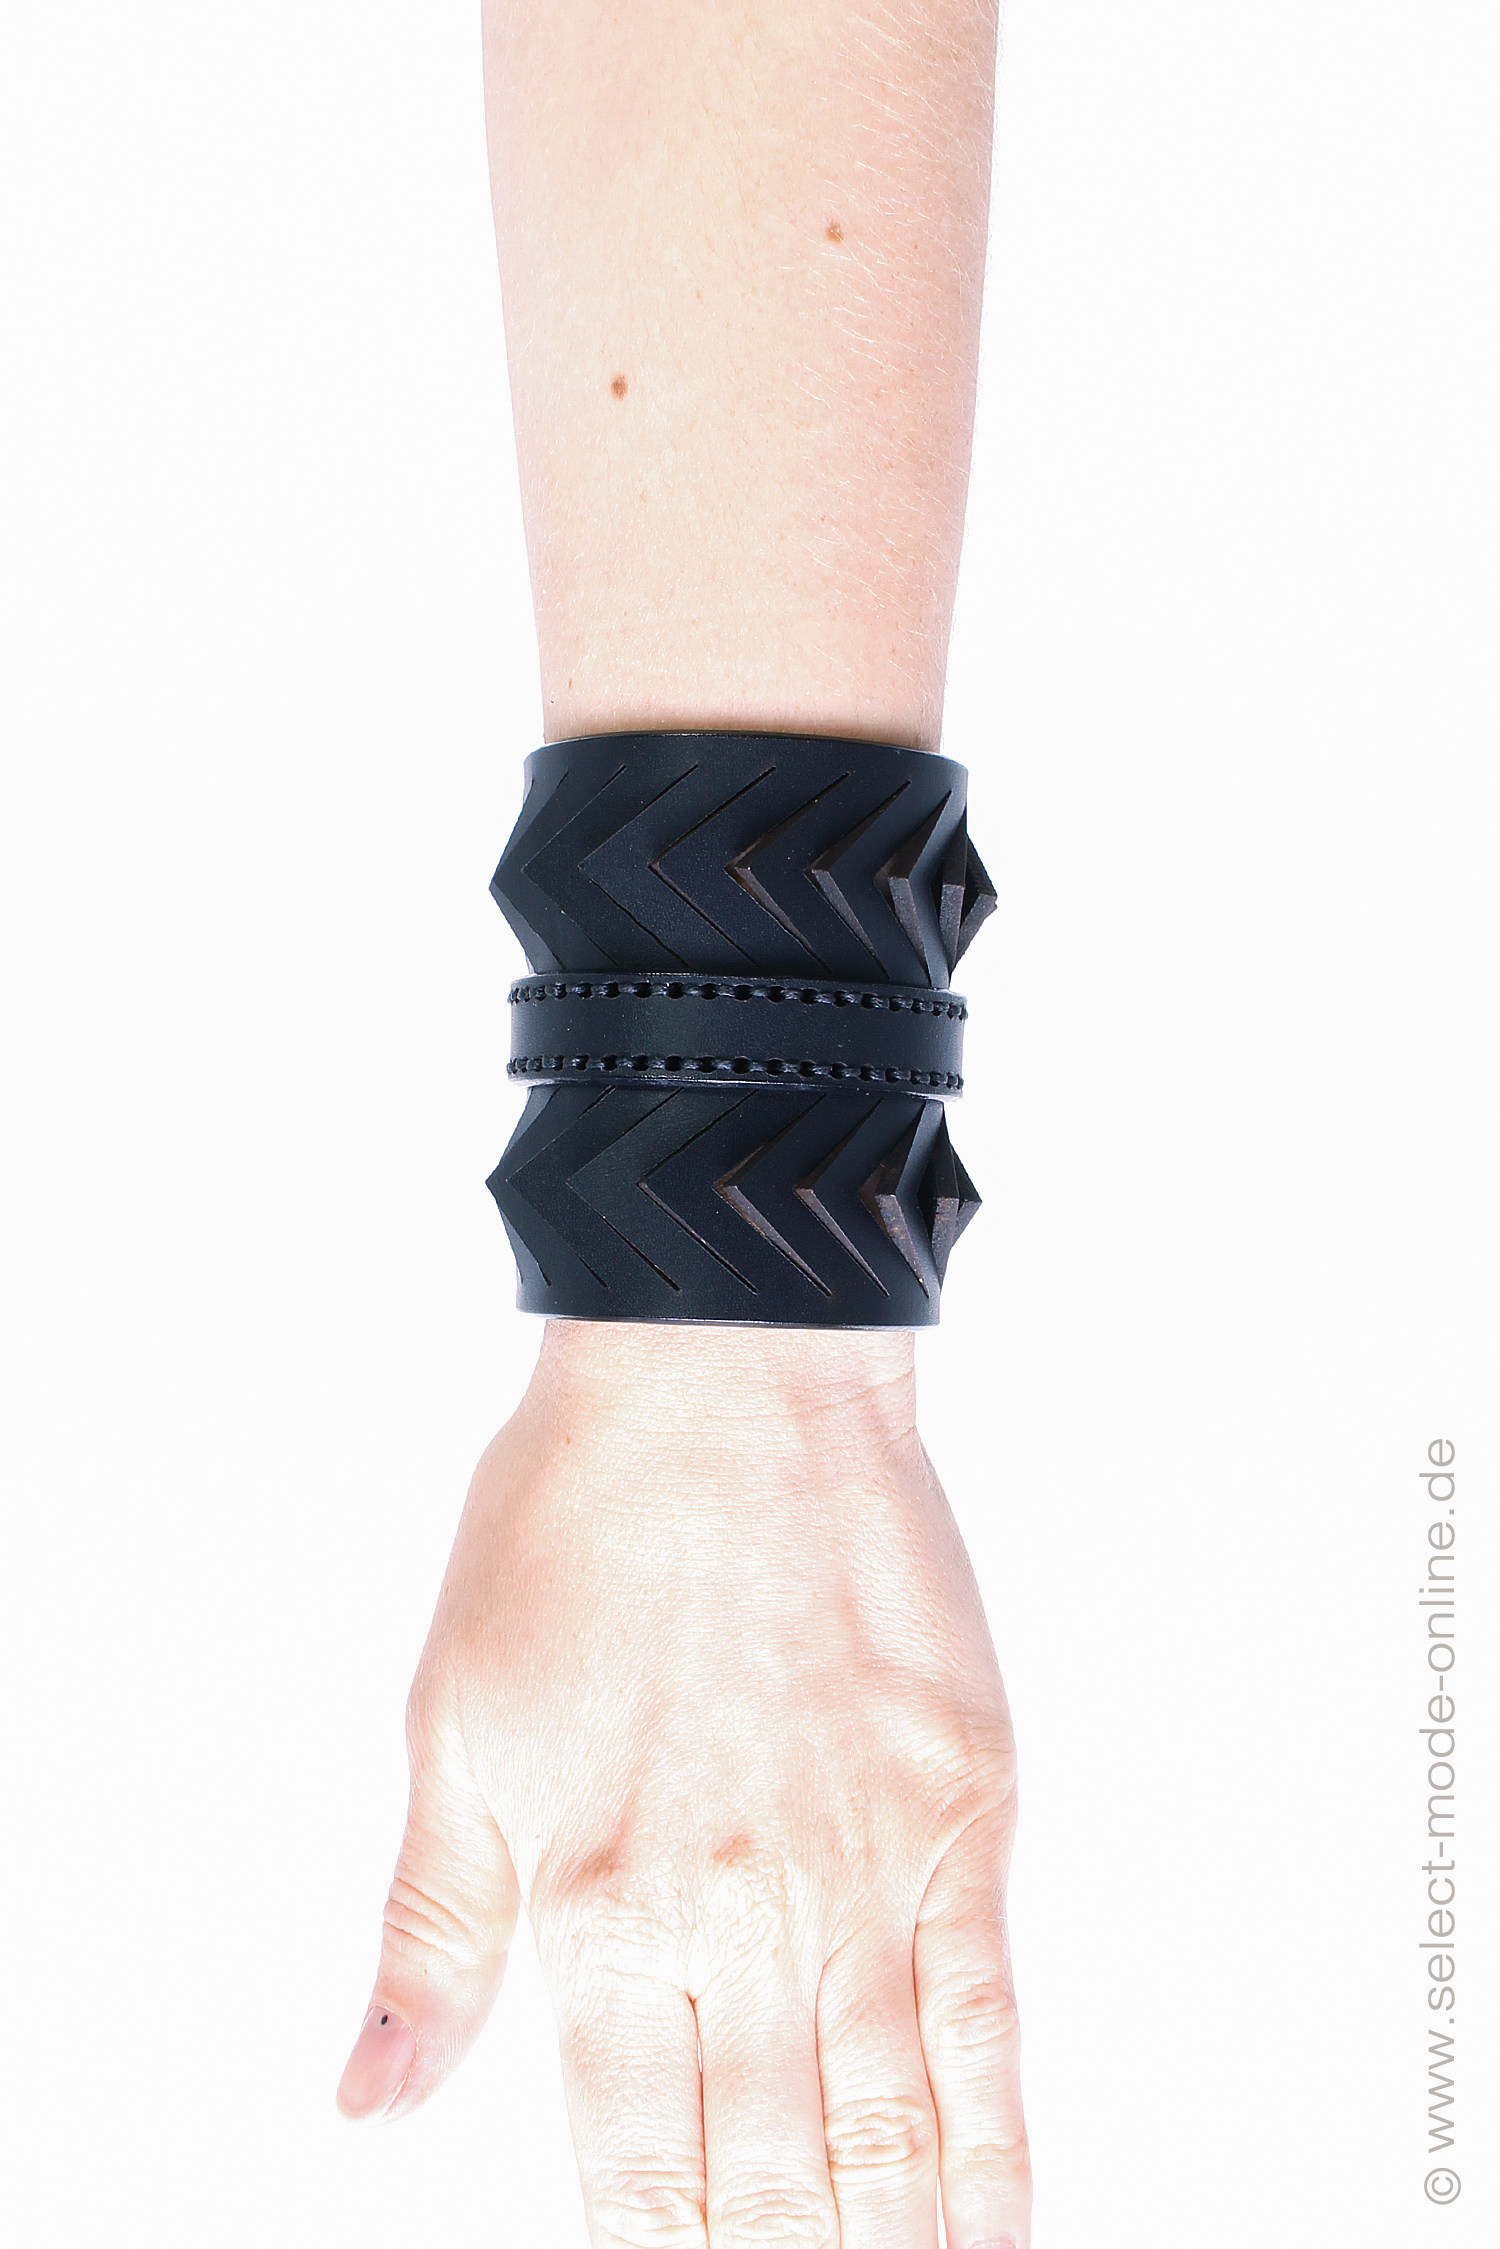 Leder Armband - schwarz - C05